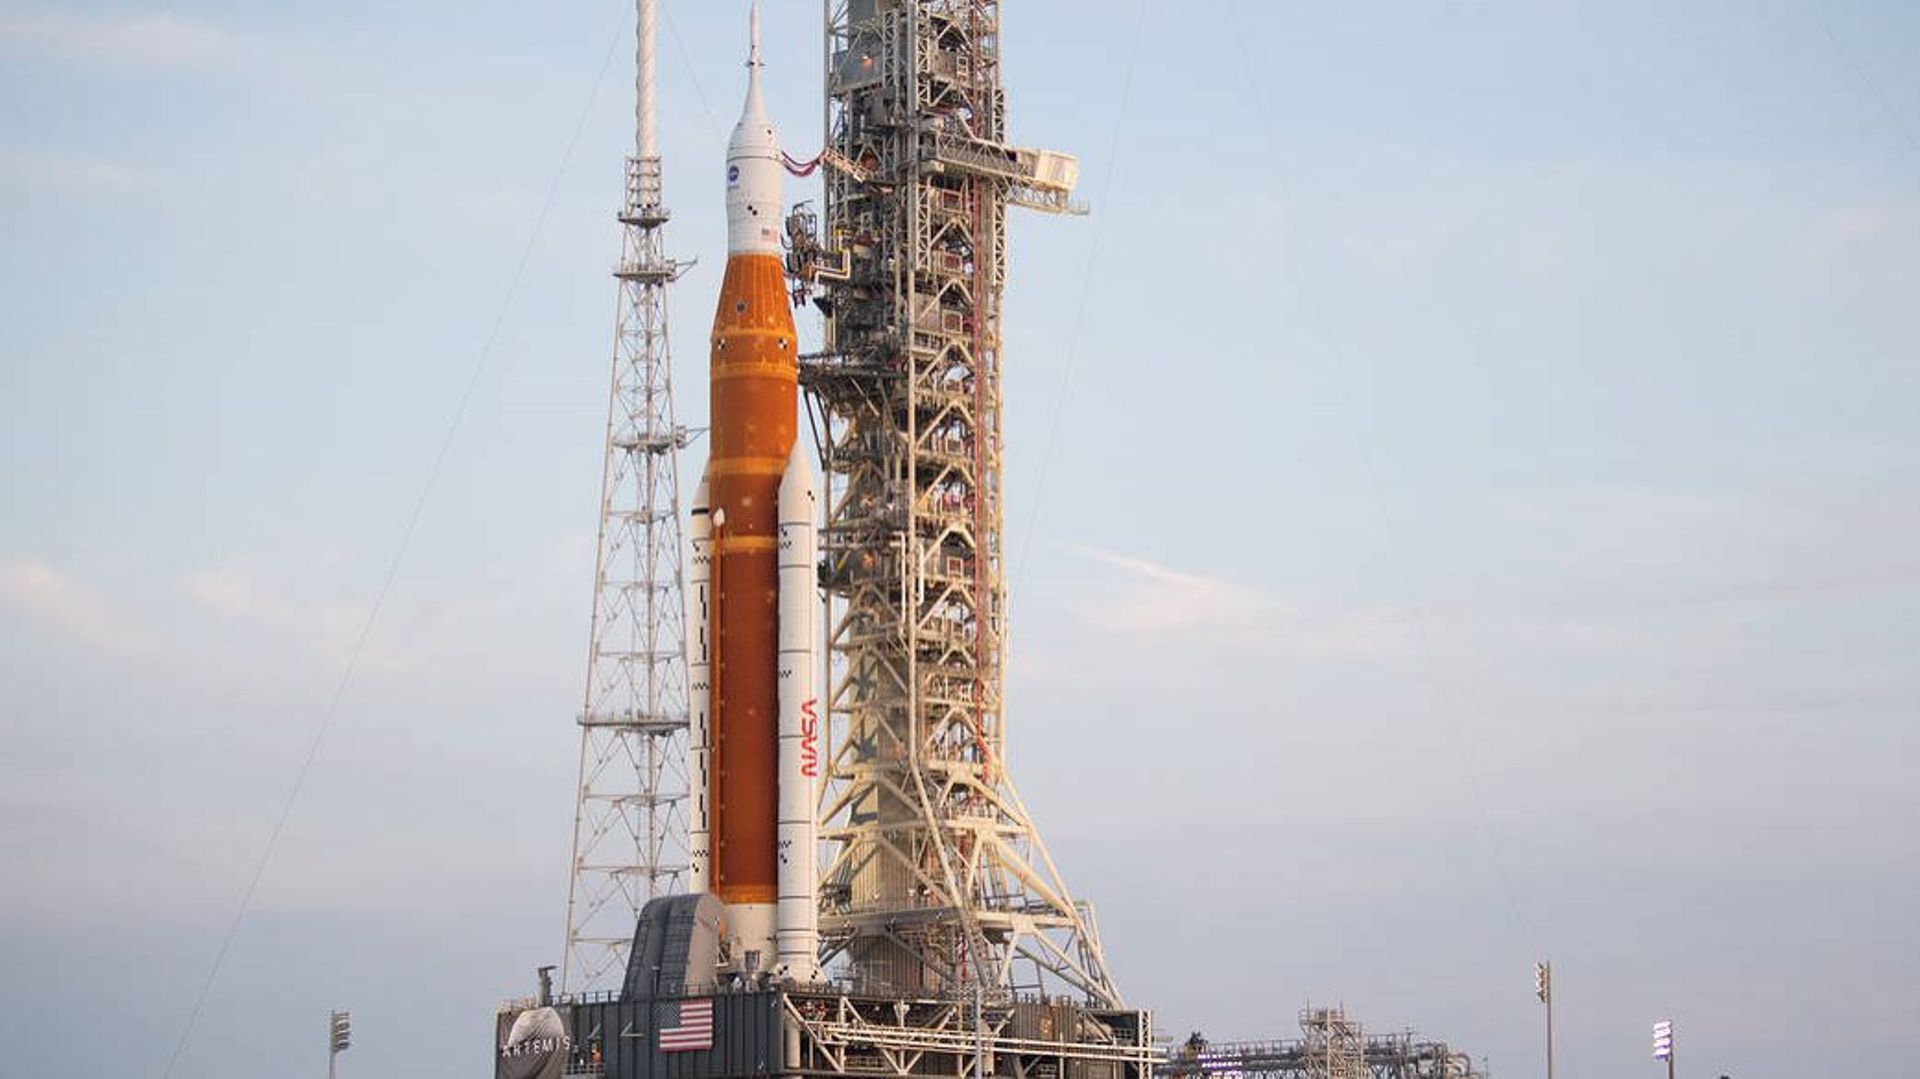 La fusée Space Launch System (SLS) de la Nasa avec le vaisseau spatial Orion à bord au sommet du lanceur mobile sur la rampe de lancement au Kennedy Space Center de la Nasa en Floride.